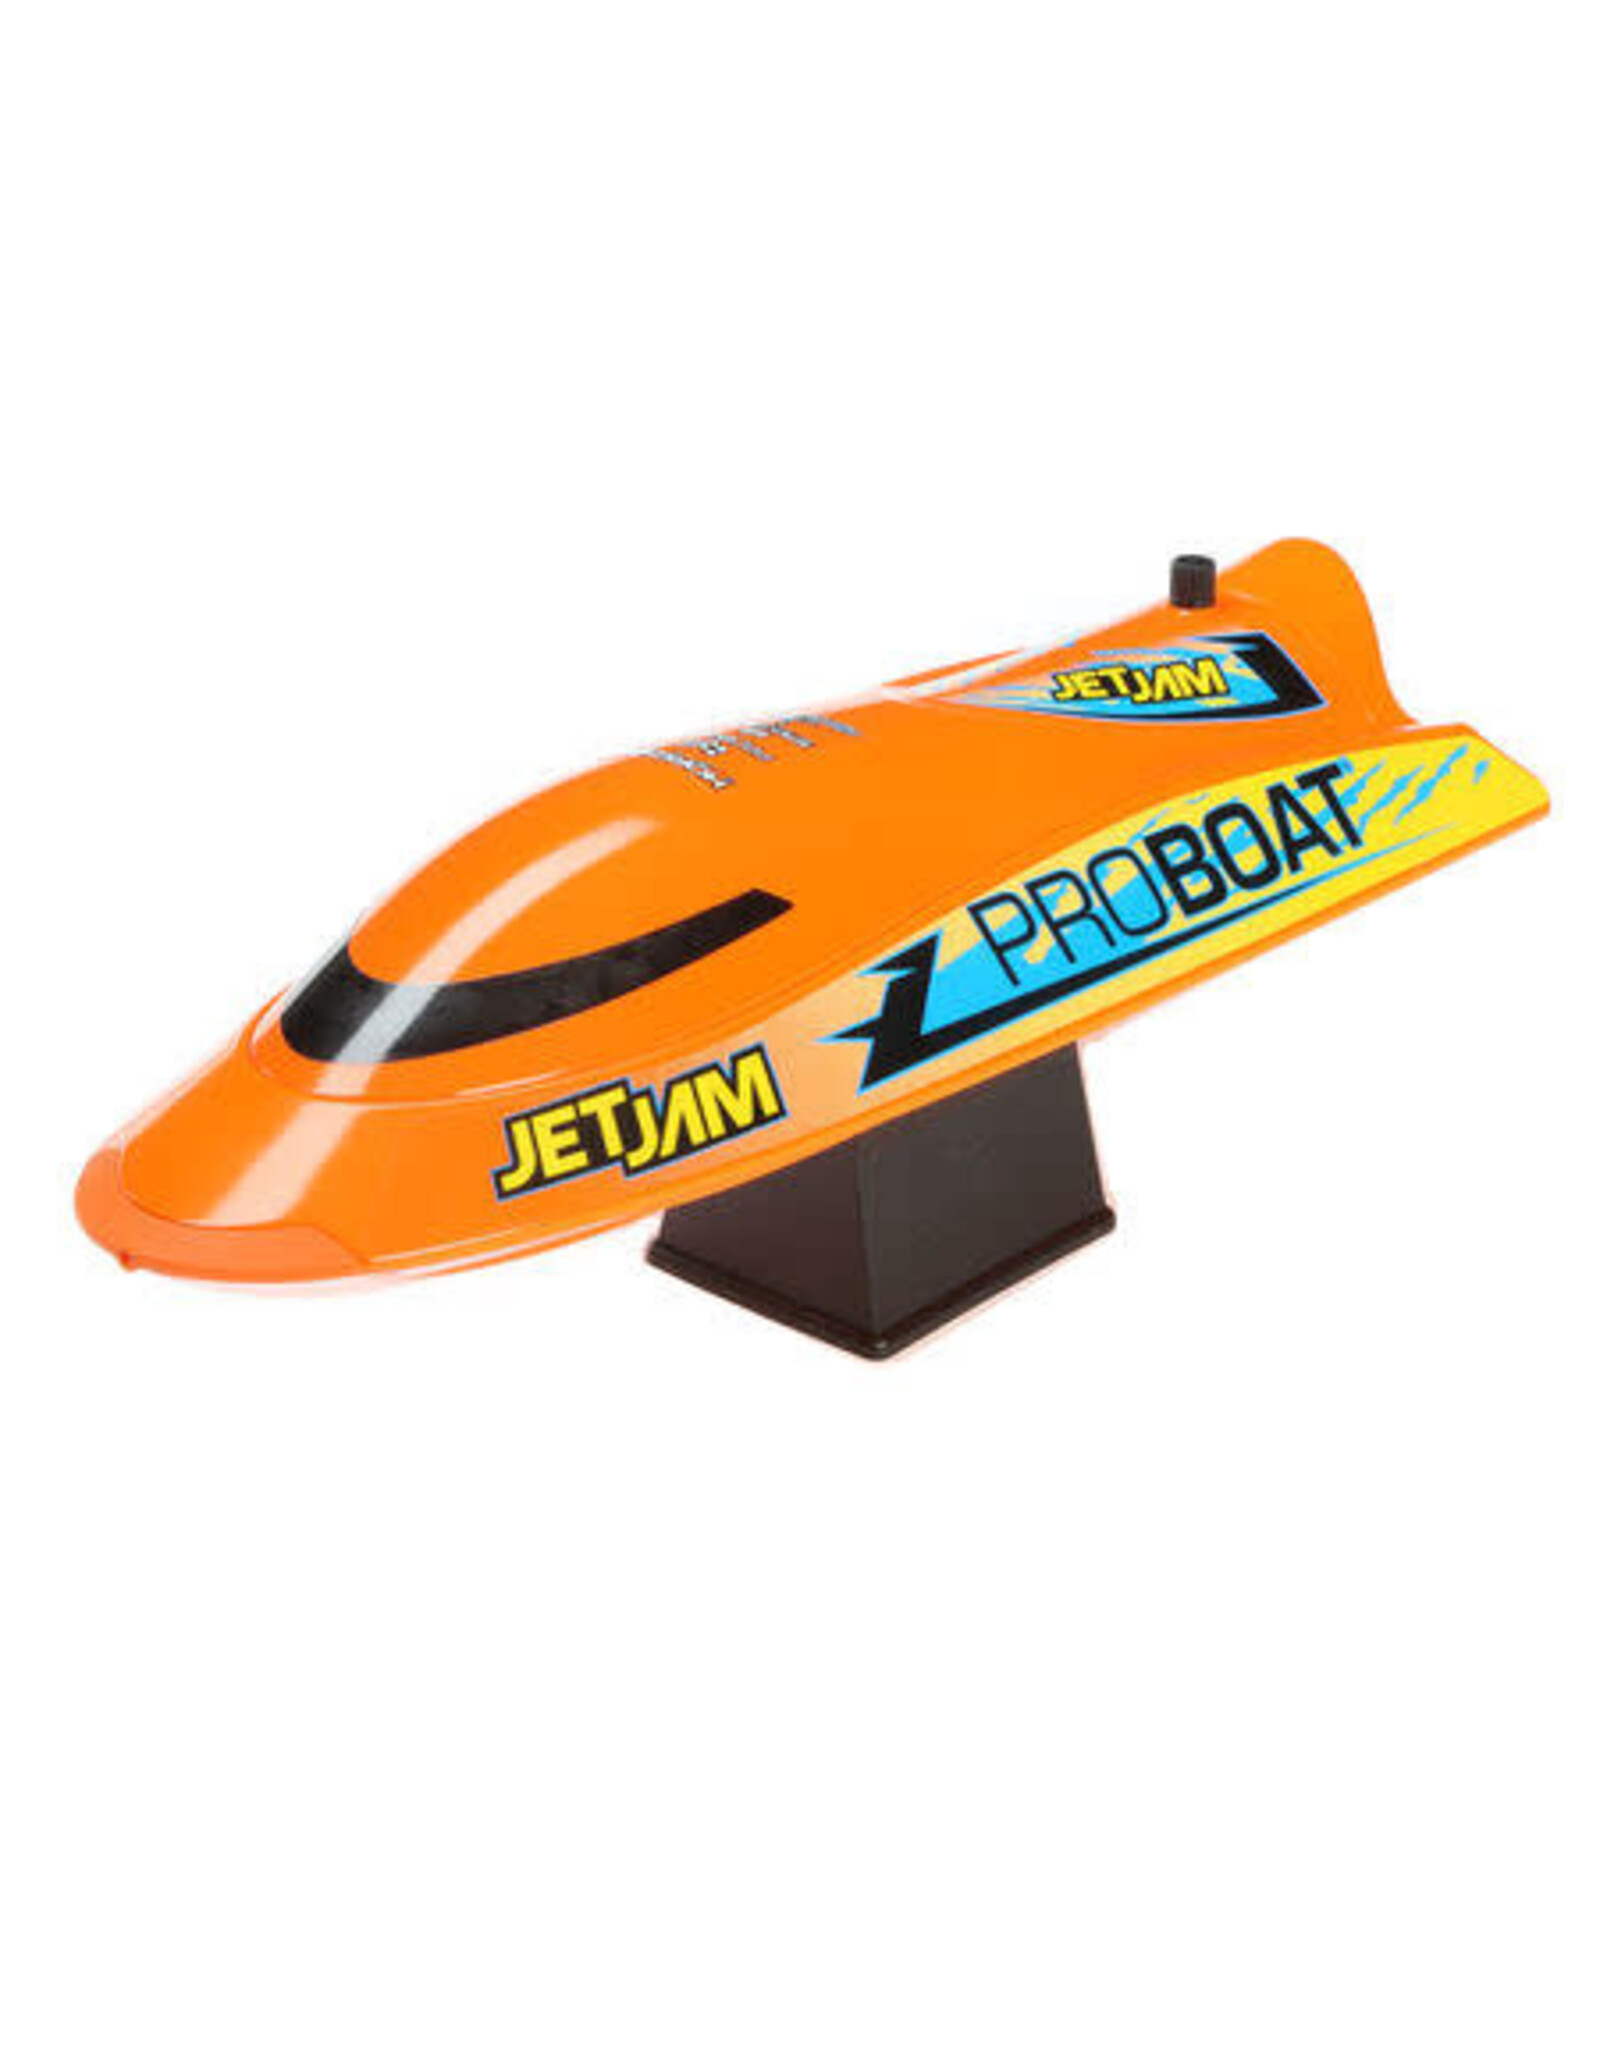 ProBoat Jet Jam 12-inch Pool Racer, Orange: RTR